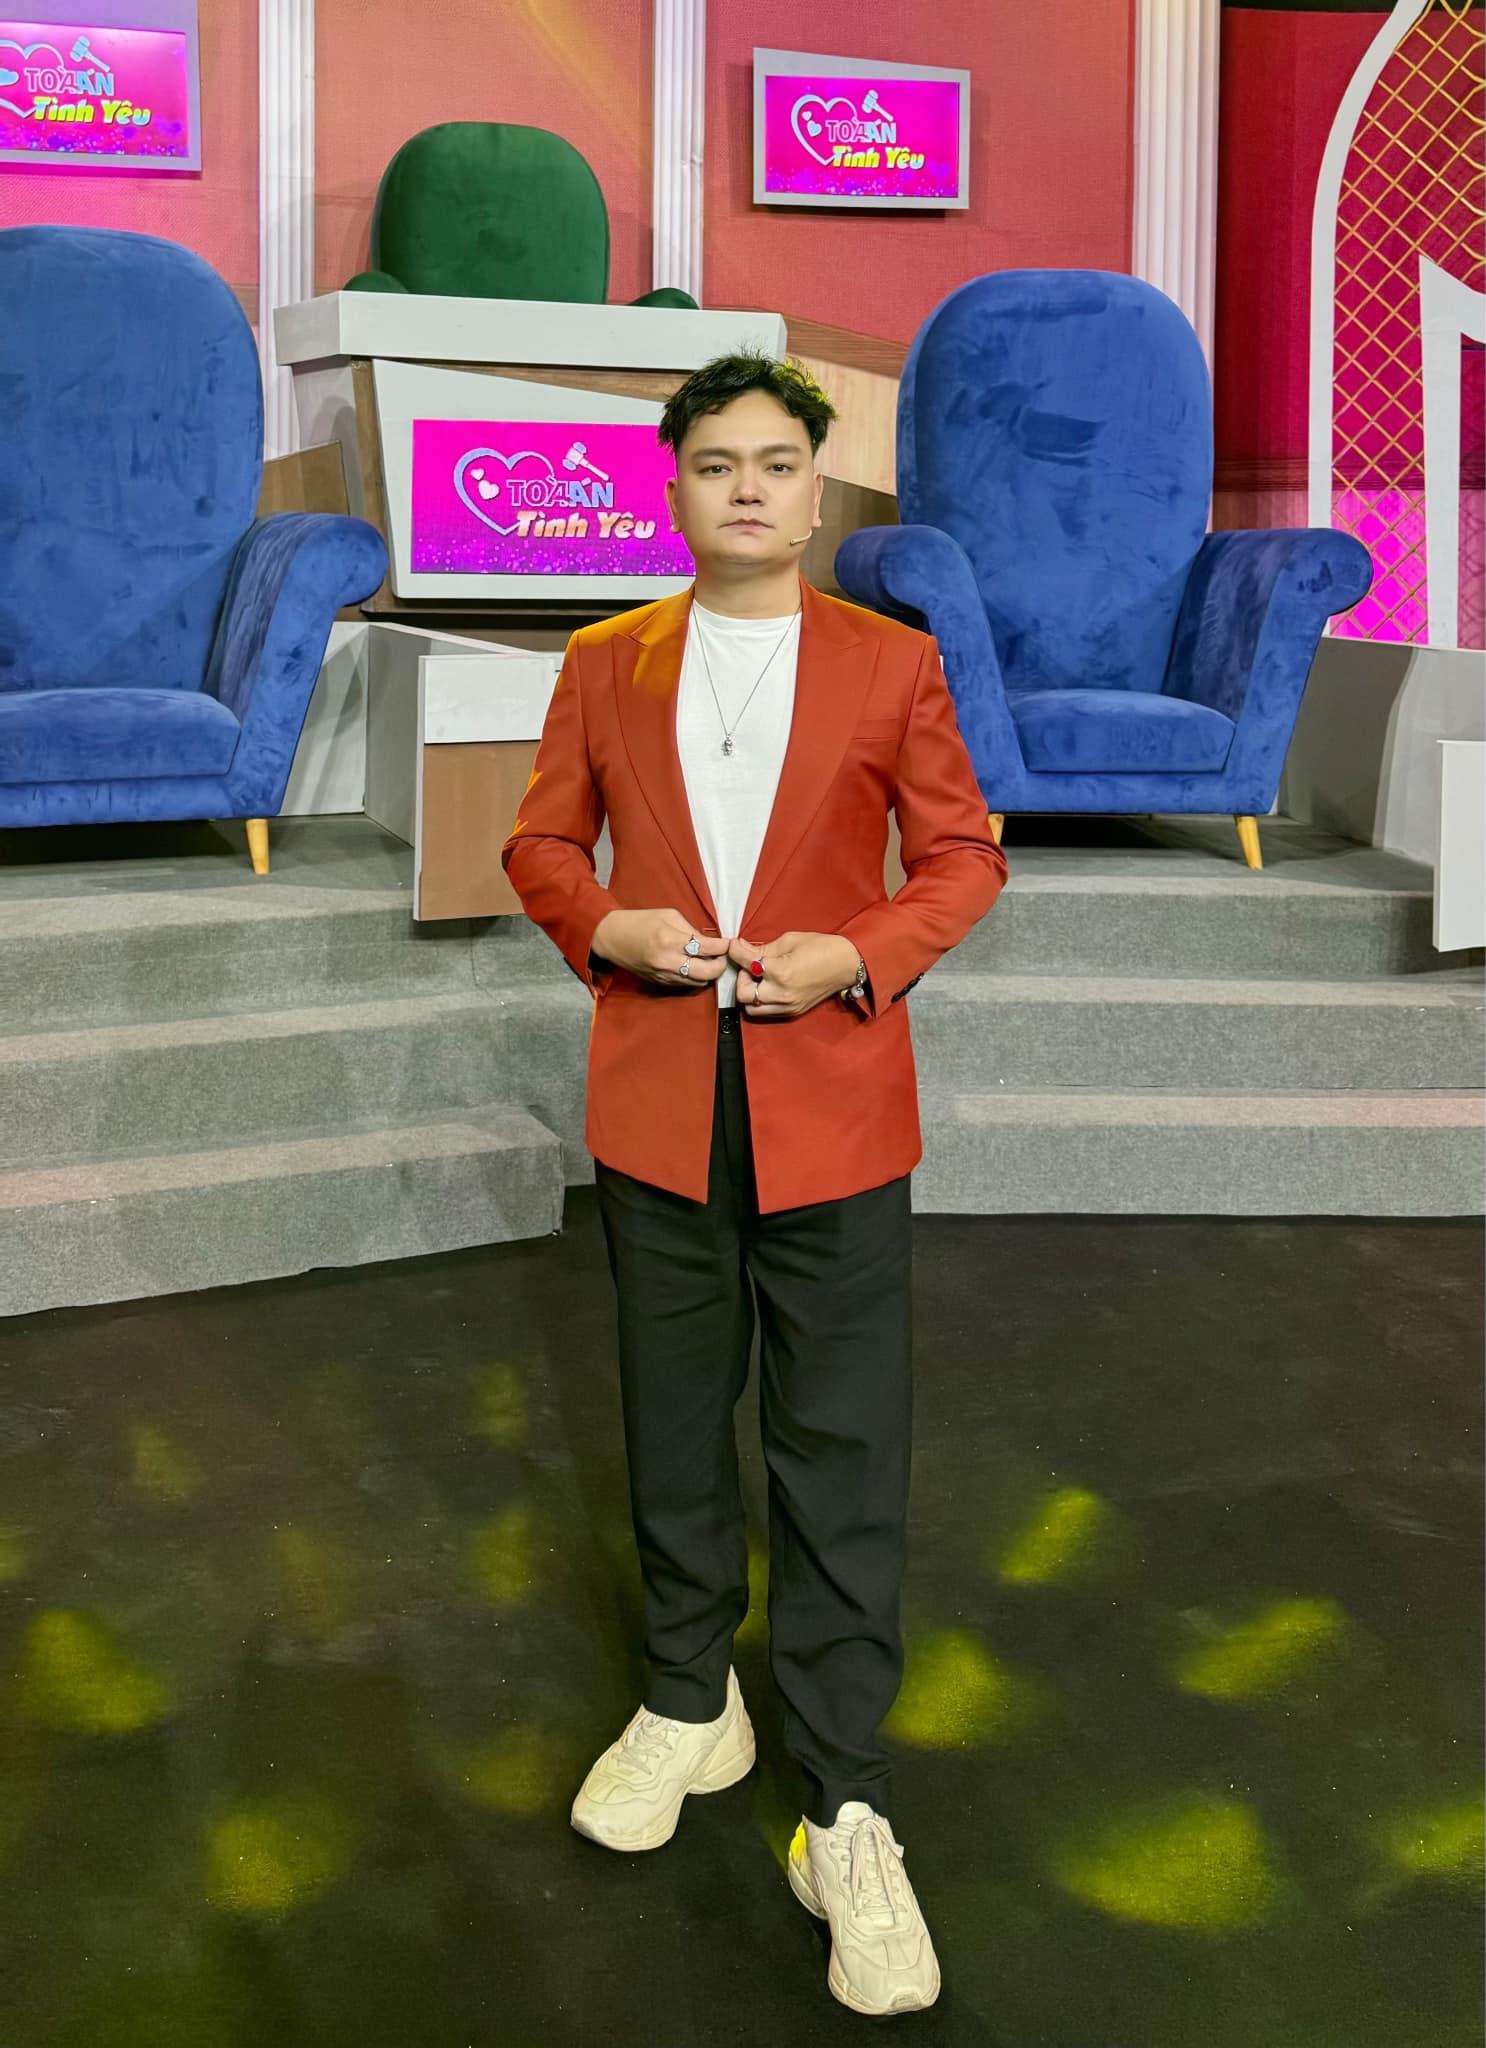 Diễn viên Trịnh Tú Trung trong trang phục áo blazer màu đỏ tươi lạ mắt của Mon Amie tham gia show Toà Án Tình Yêu